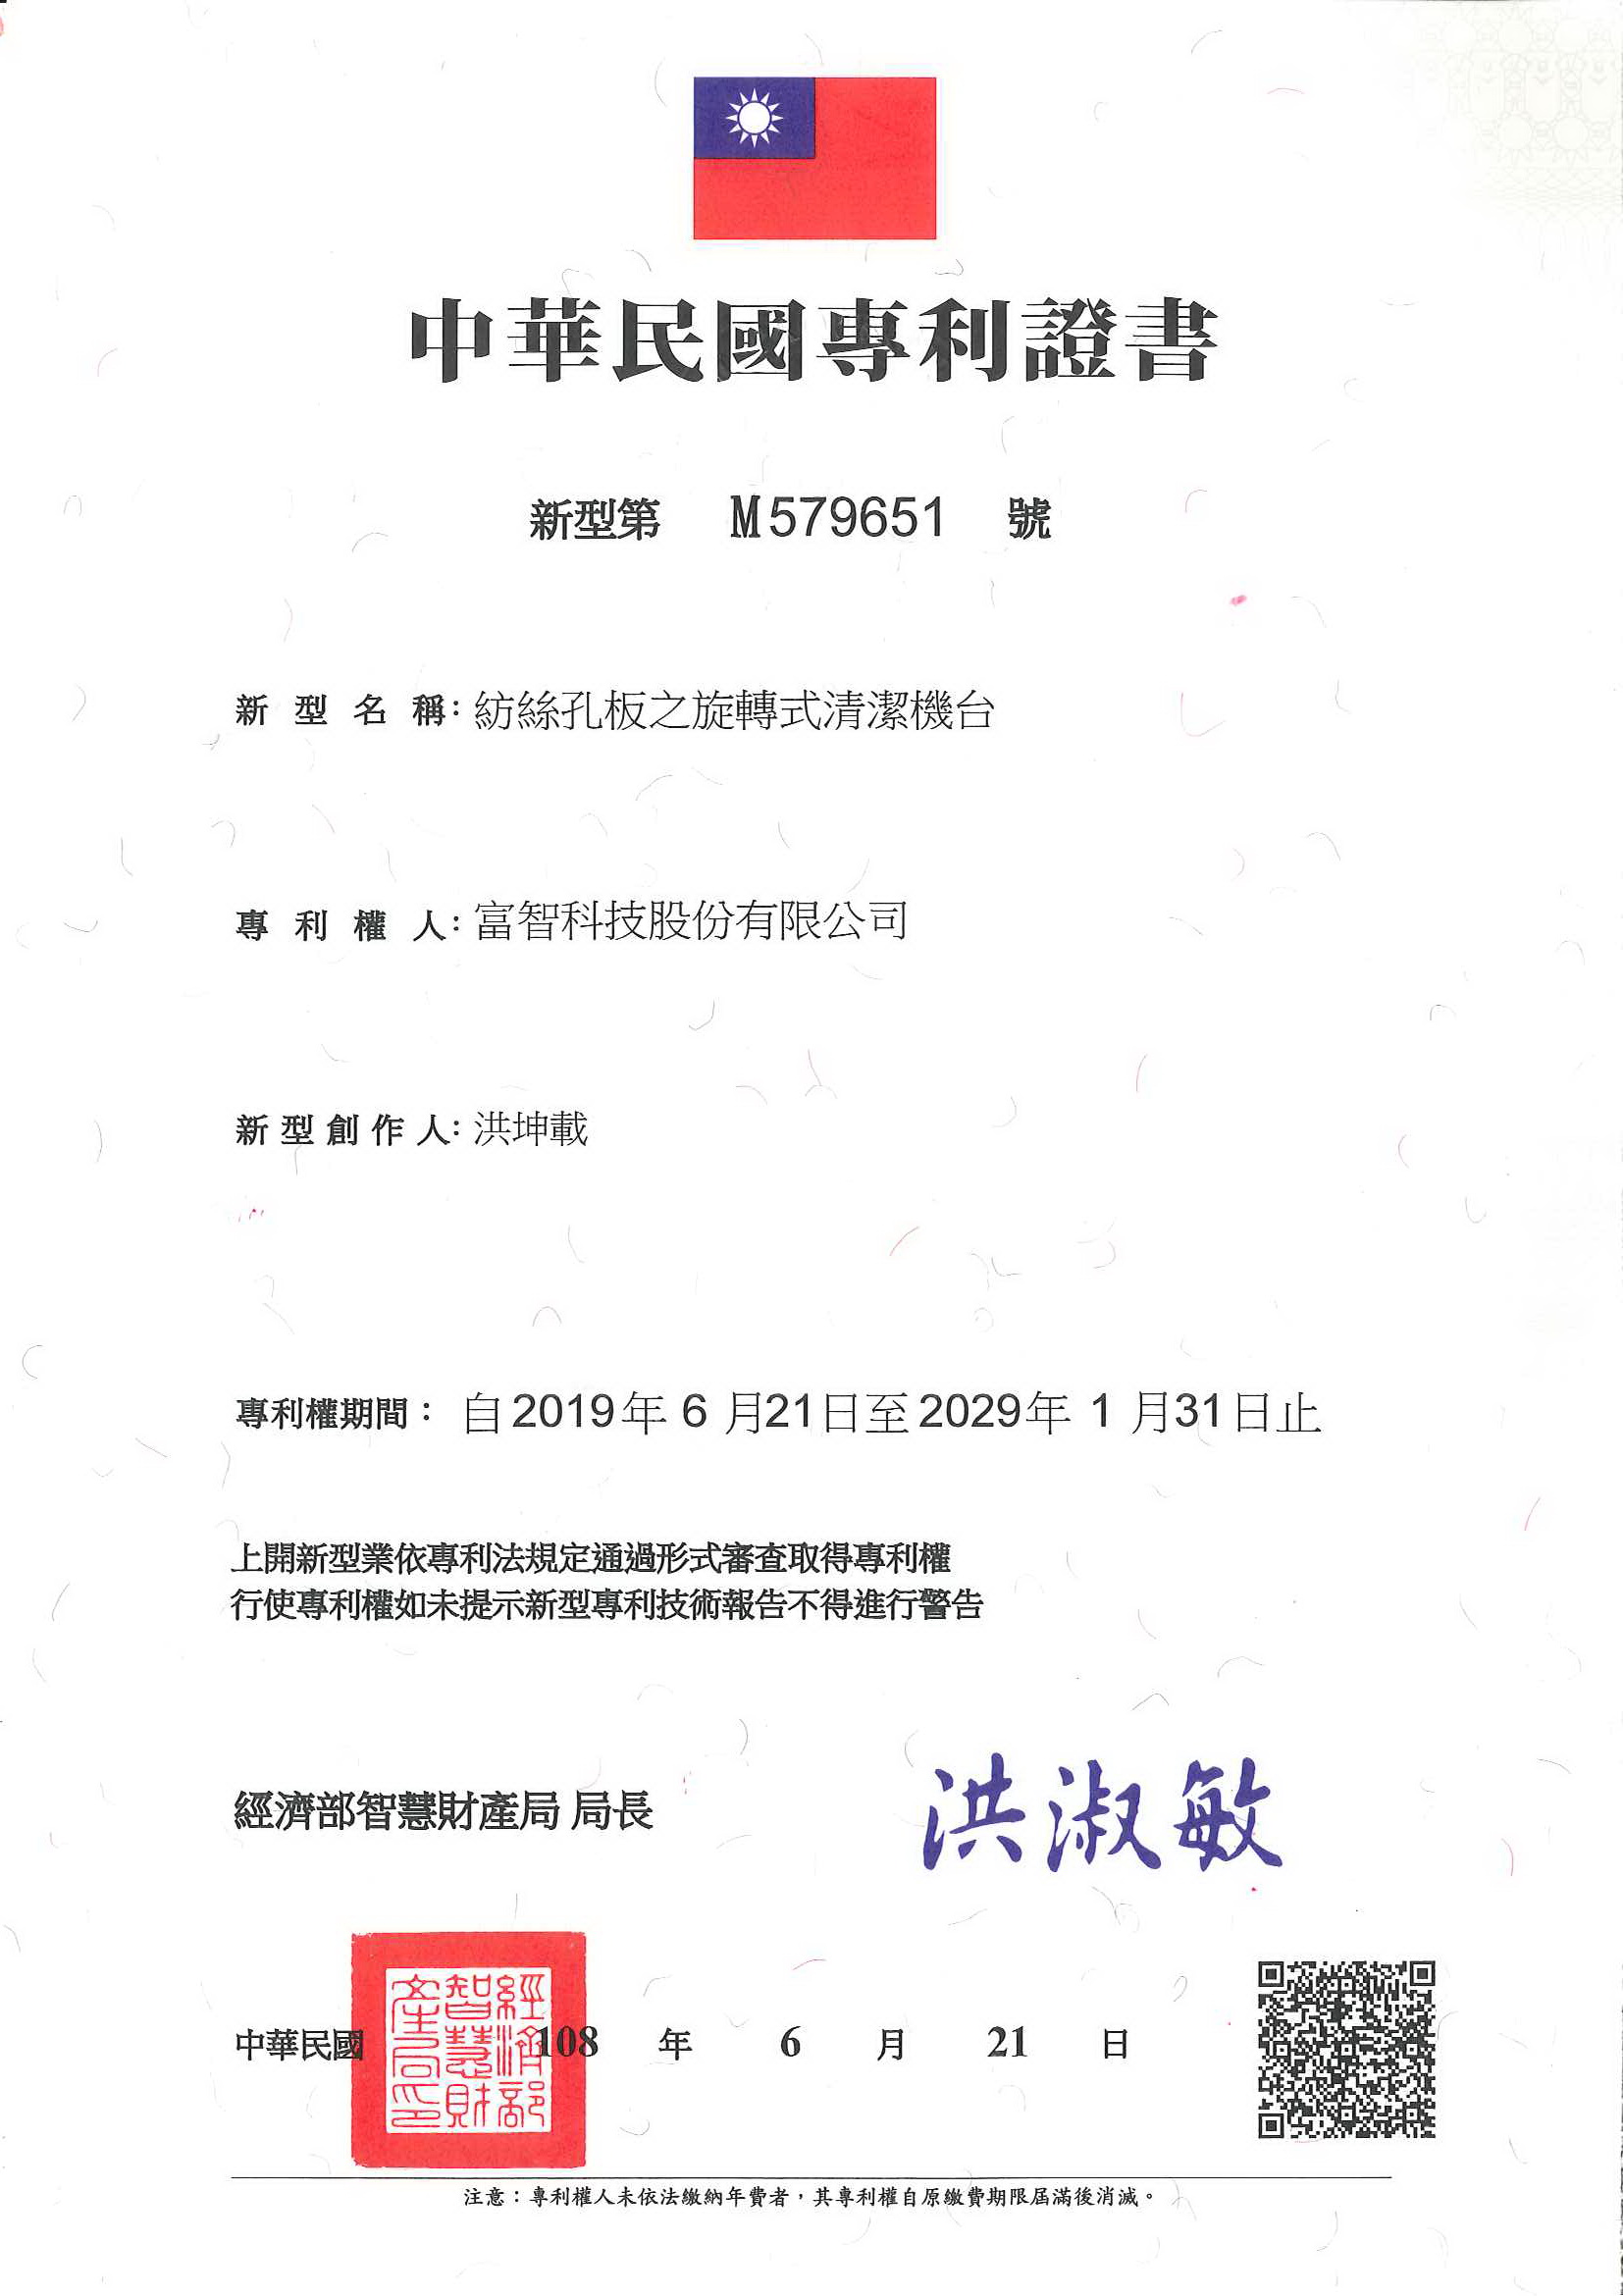 此為紡絲孔板之旋轉式清潔機台中華民國民國專利證書，申請專利核准通過